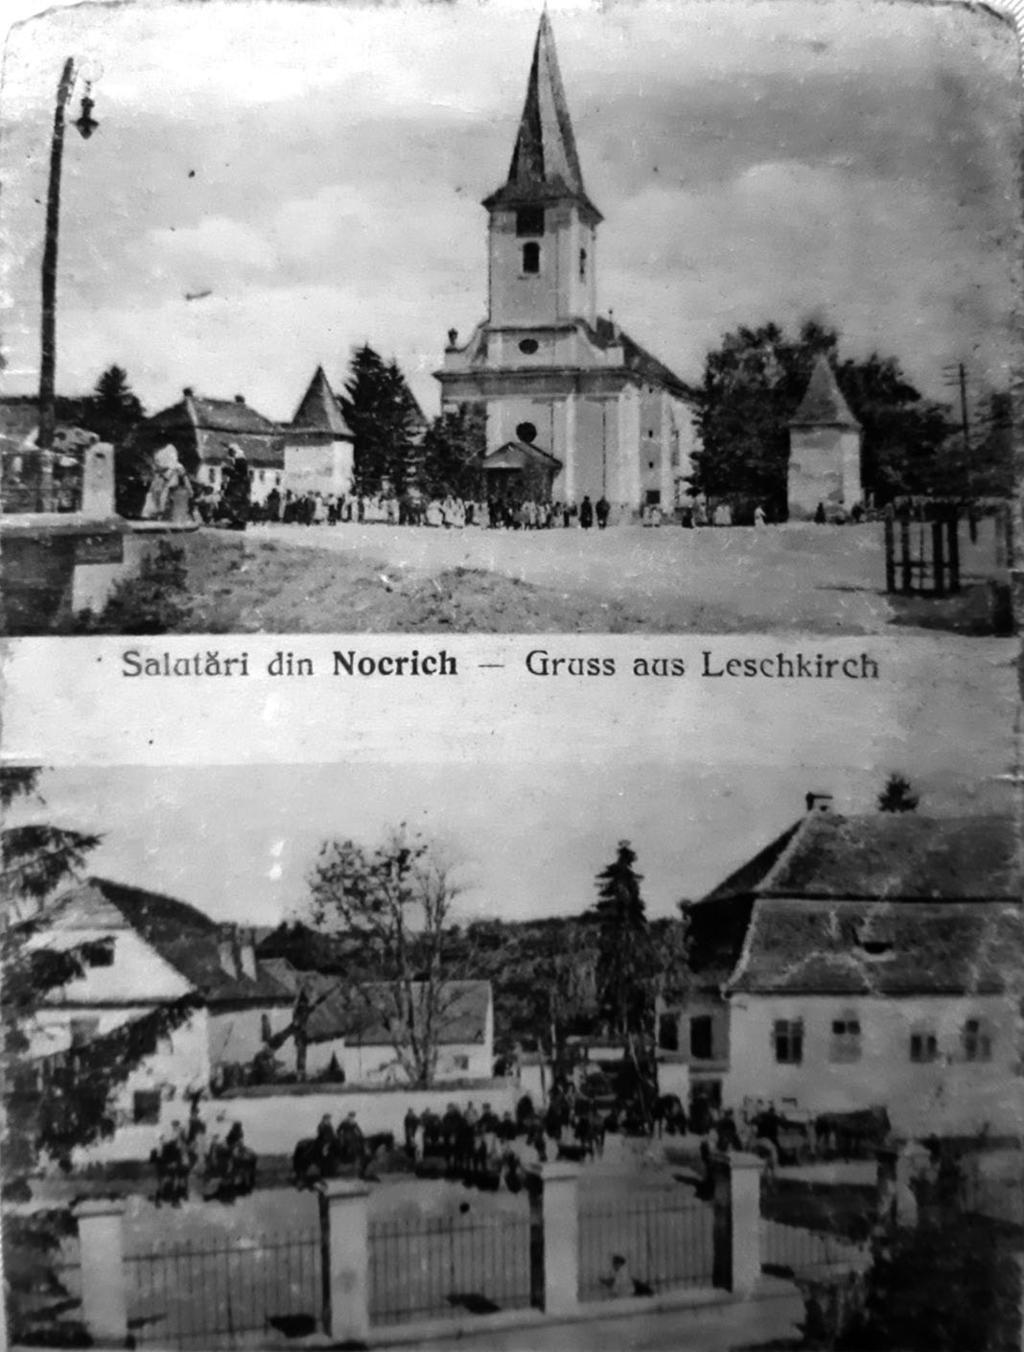 Între Nocrich și Alțîna a existat un conflict ce a durat mai bine de 200 de ani, pentru reședința de scaun și dreptul de târg (Marktrecht).